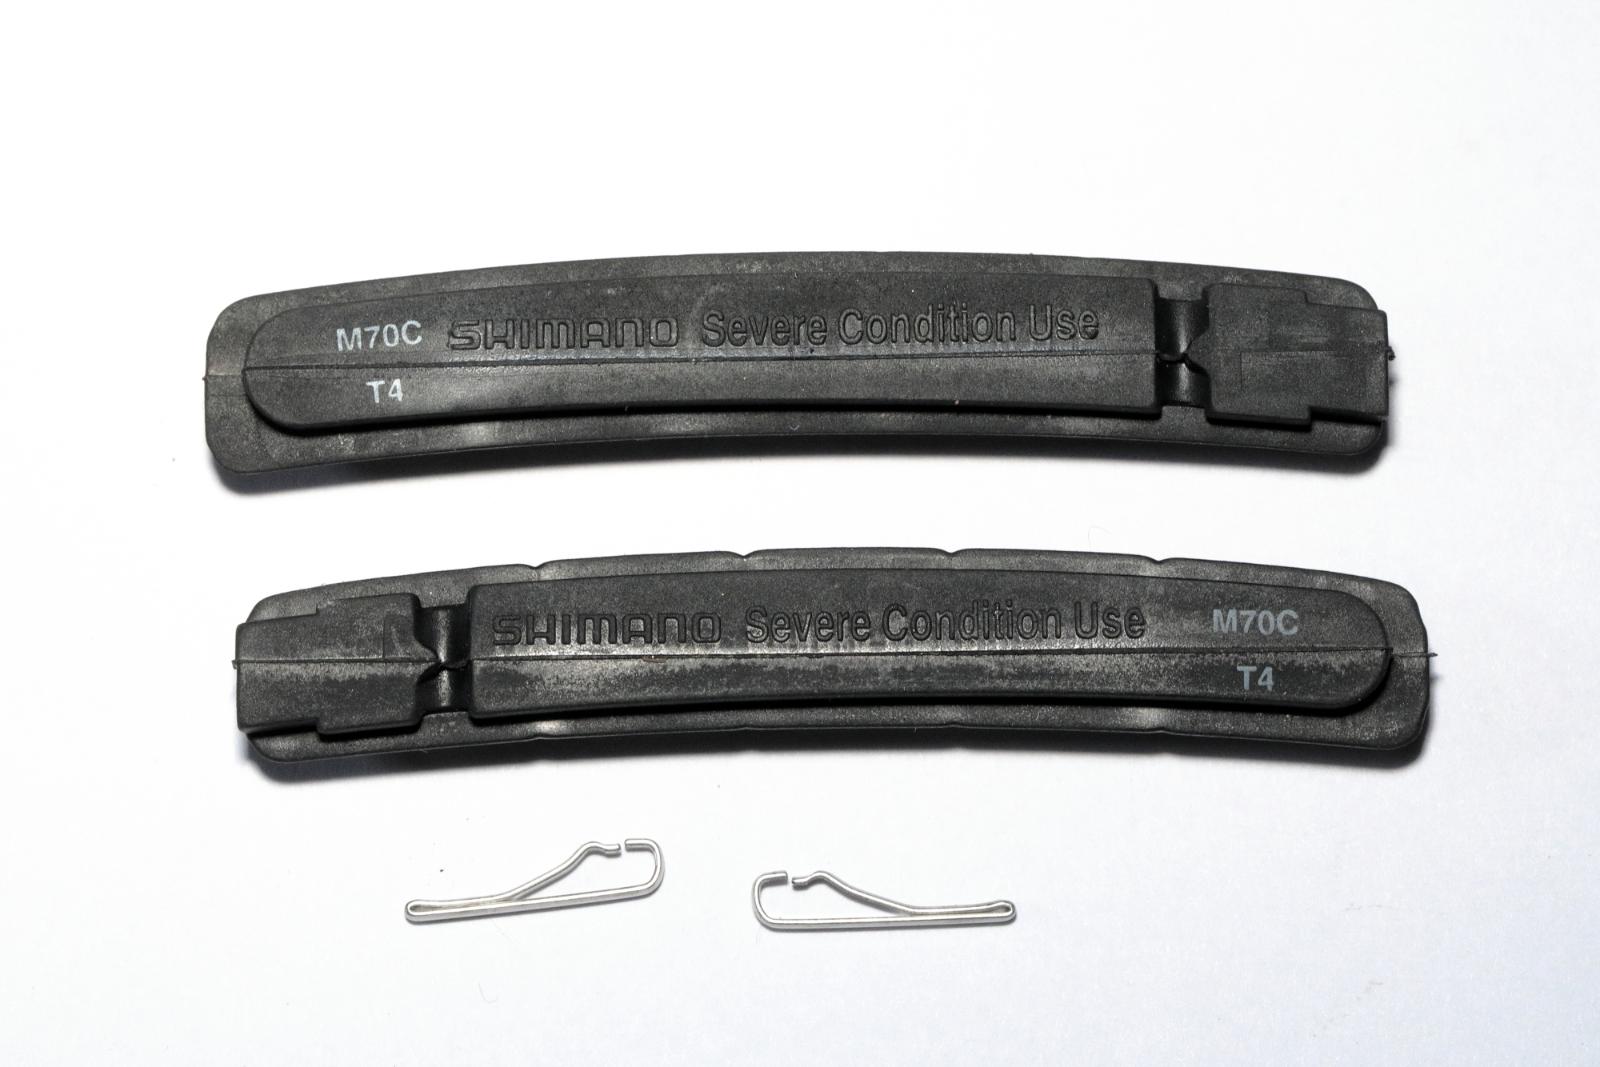 Originálne gumičky Shimano M70CT4 Severe Condition pre XTR/XT/LX/Deore - Cyklistika